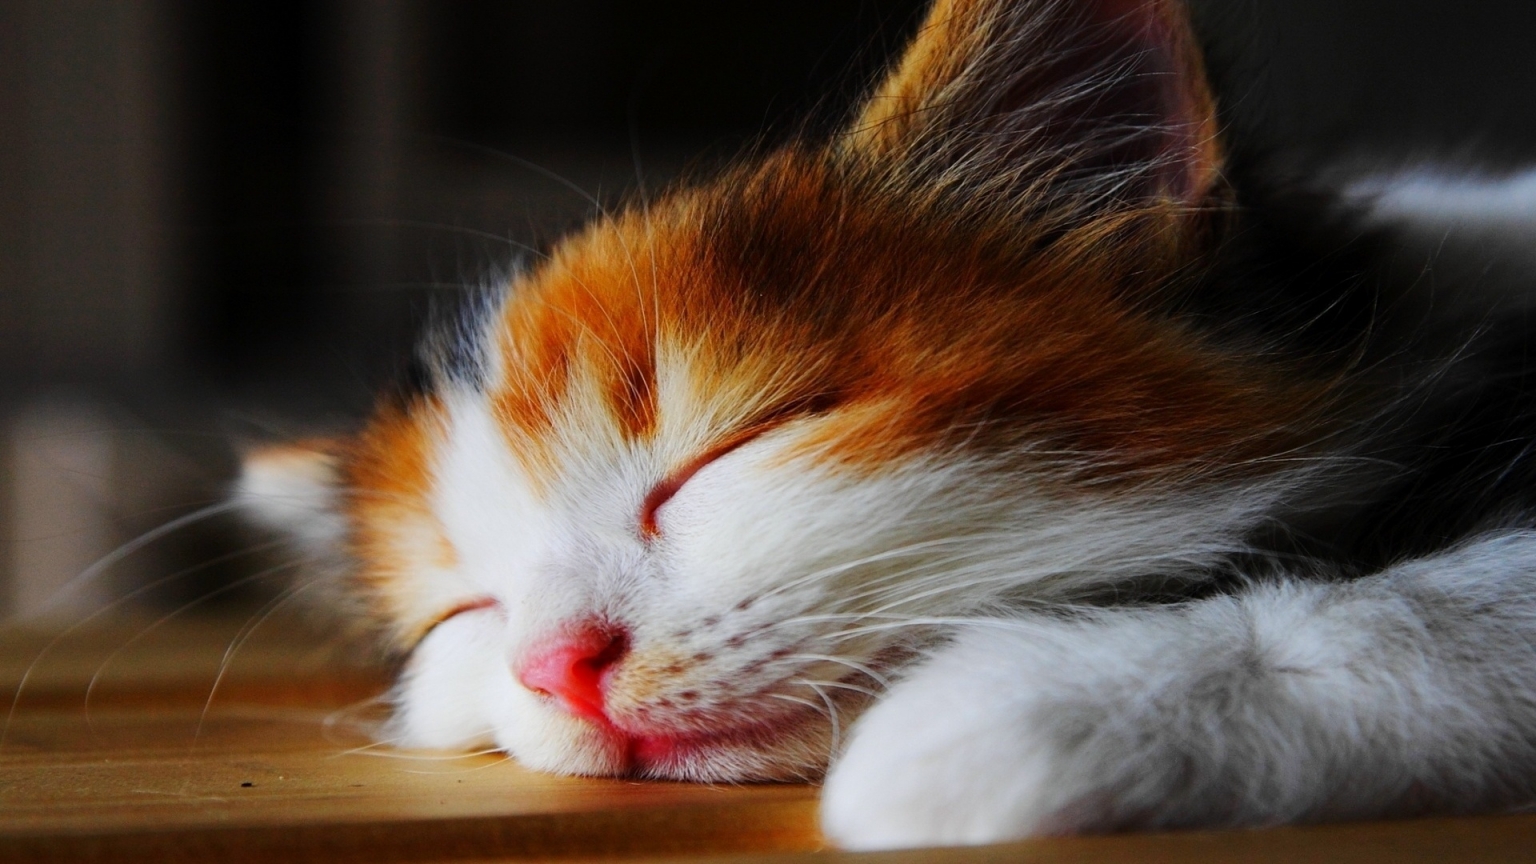 Amazingly Cute Sleepy Kitten  for 1536 x 864 HDTV resolution